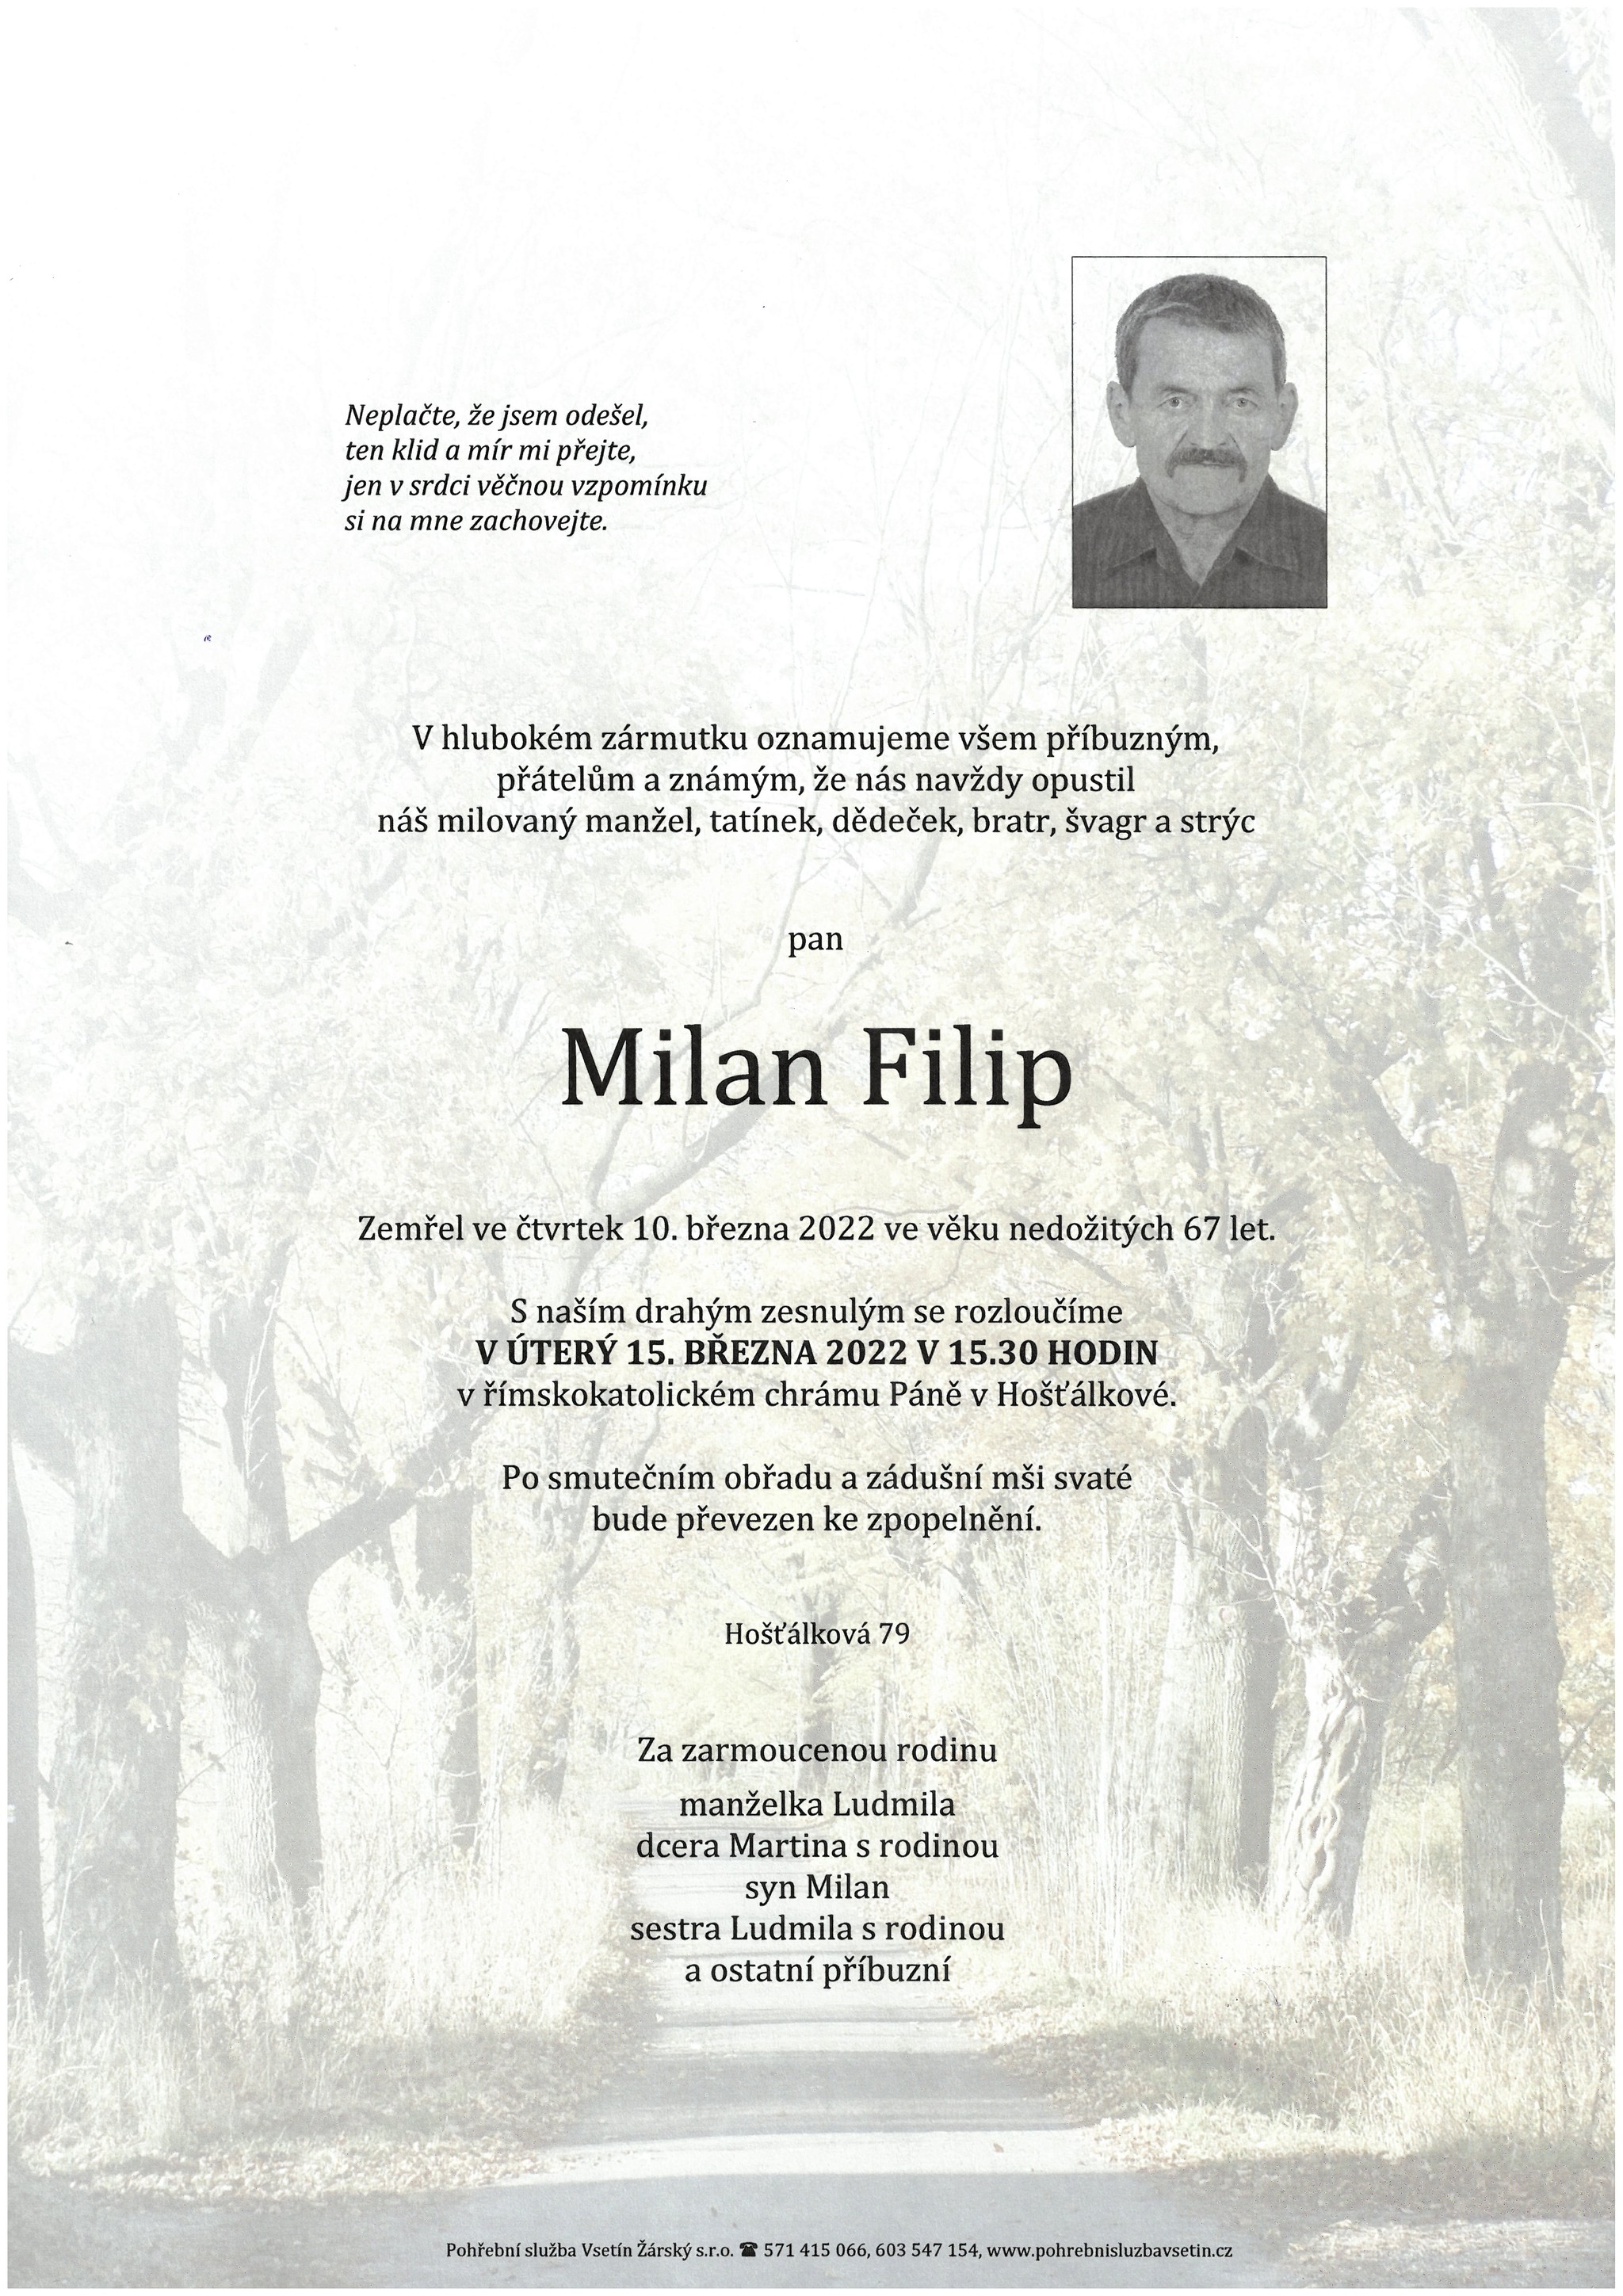 Milan Filip